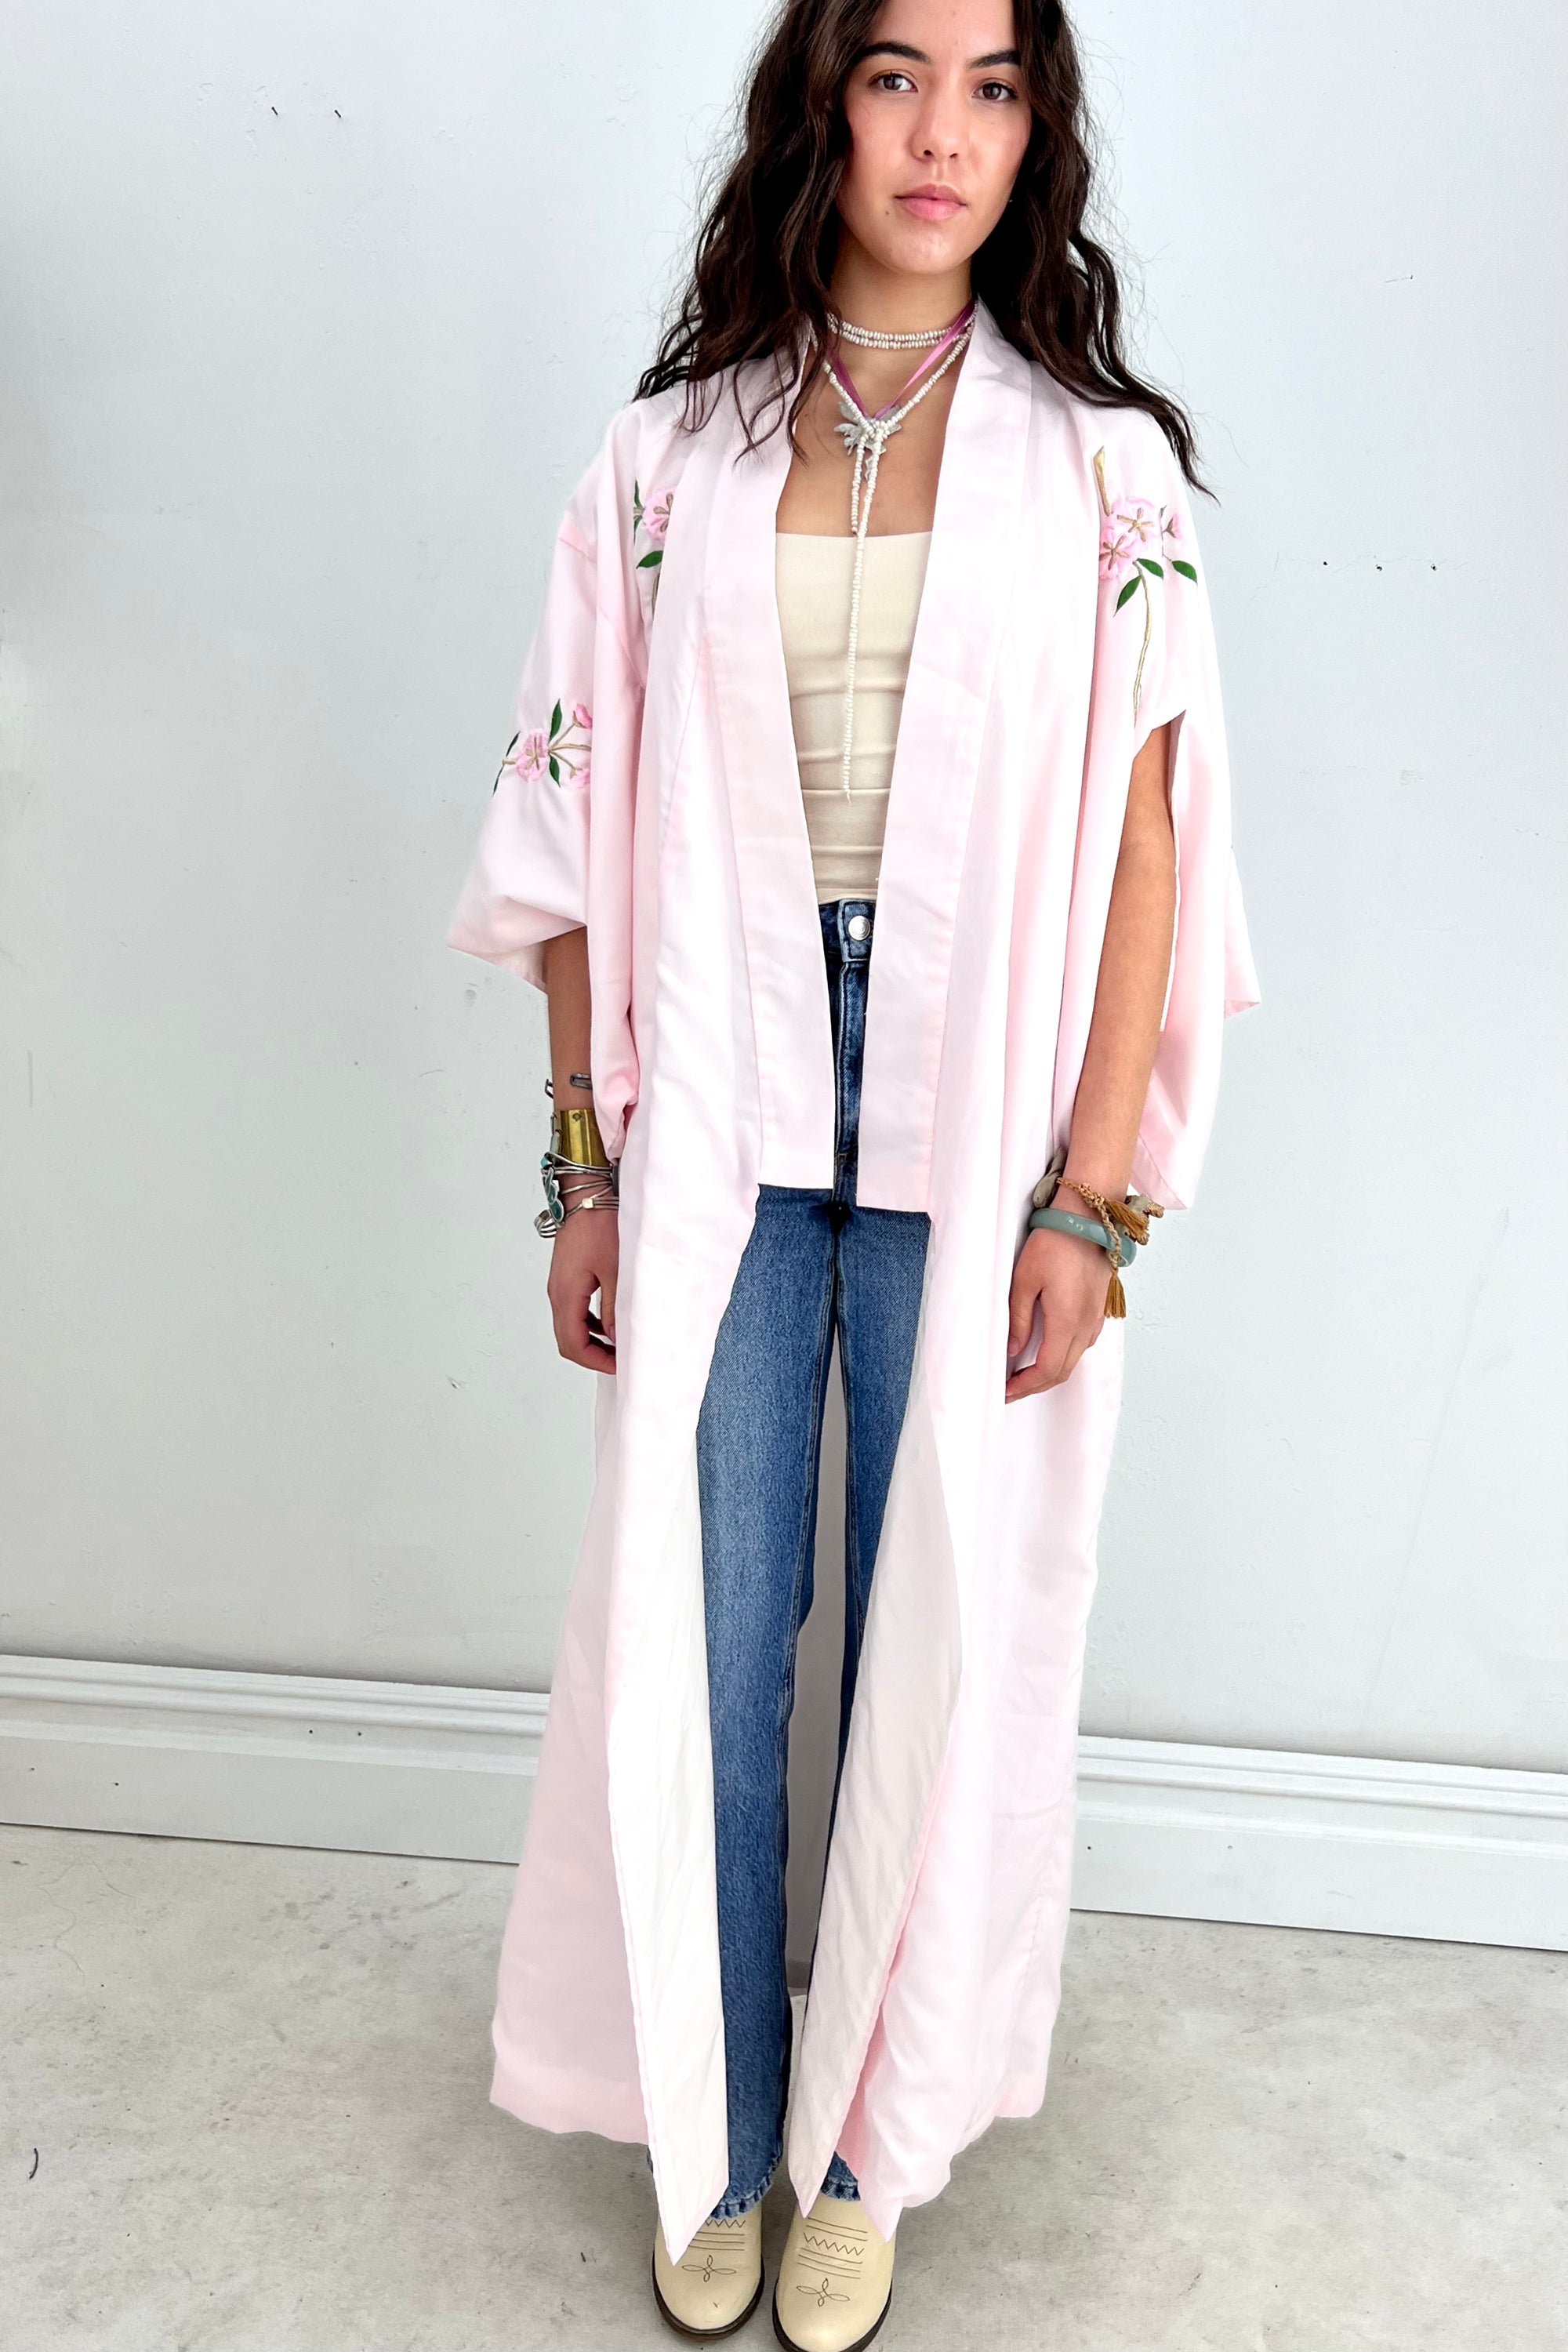 Vintage Cherry Blossom Kimono Selected by Anna Corinna